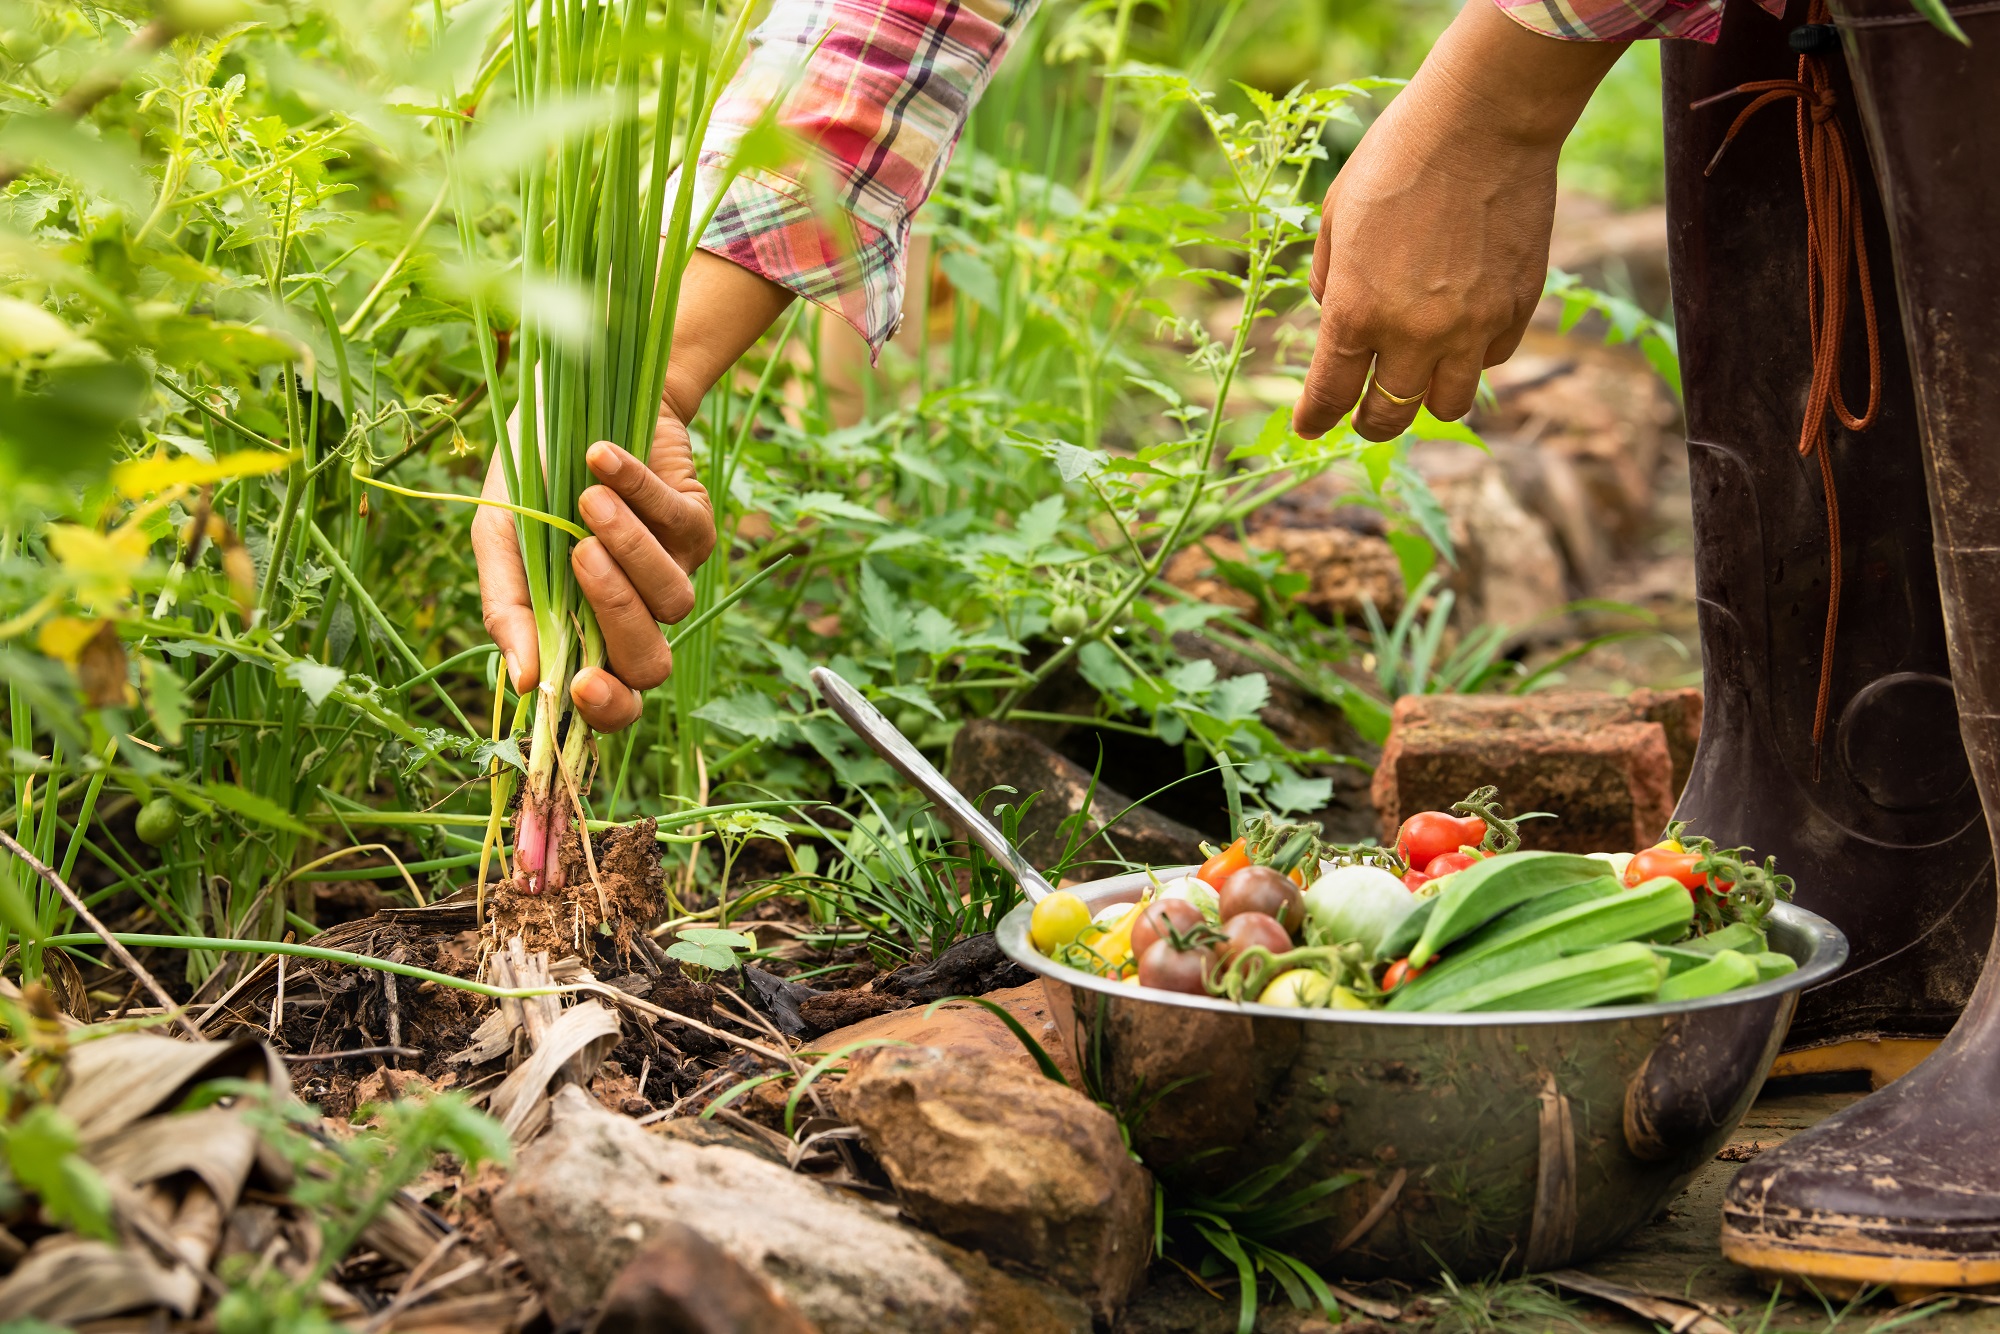 الزراعة العضوية في المناطق الفقيرة: تعزيز الأمان الغذائي والاستدامة البيئية